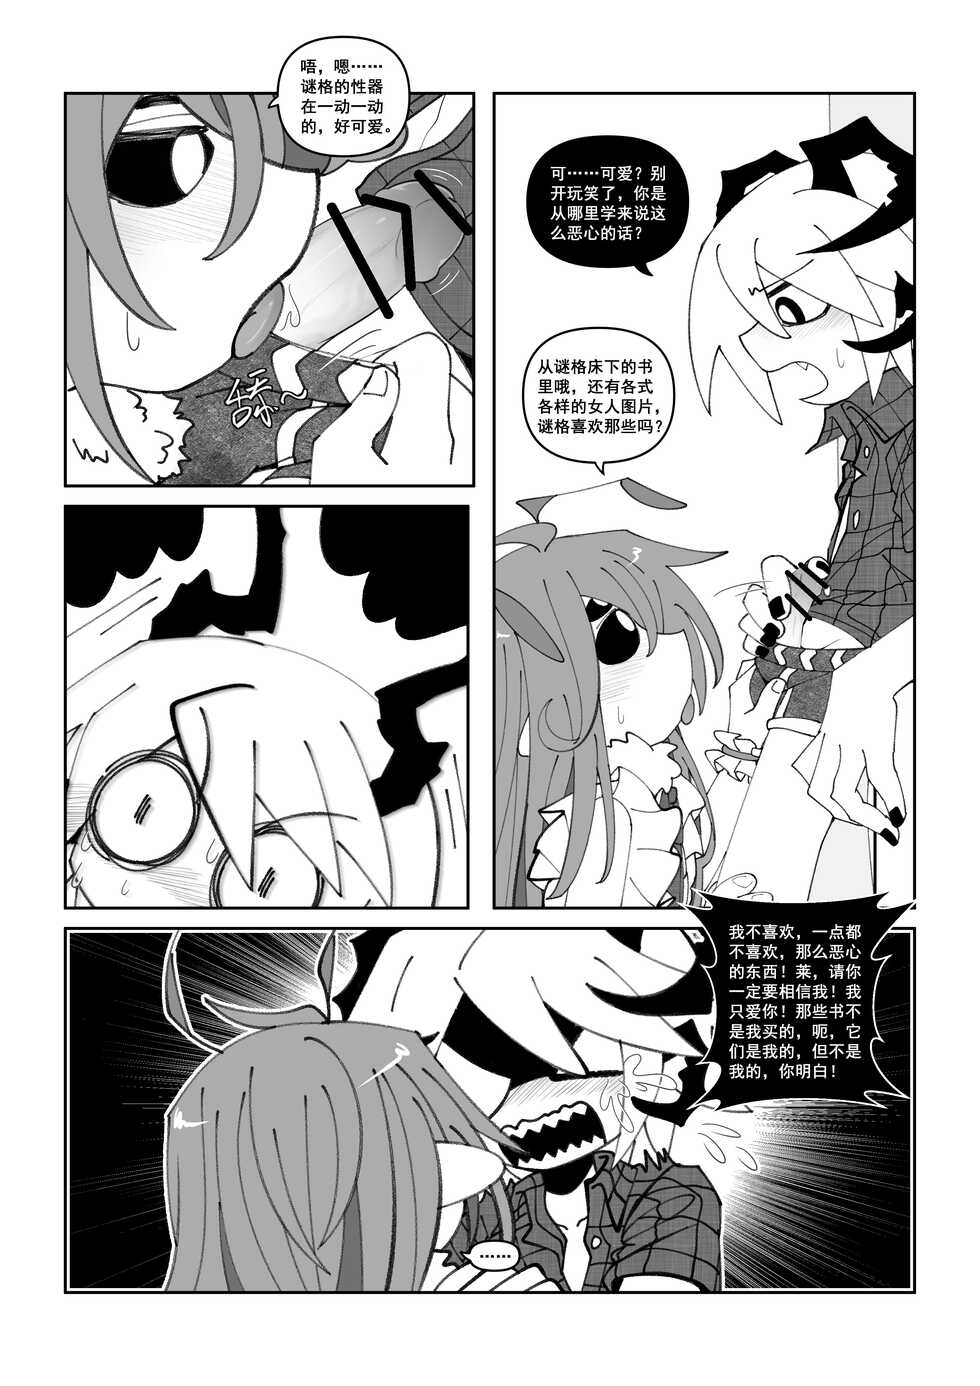 【Goat】 莱和谜格 - Page 4